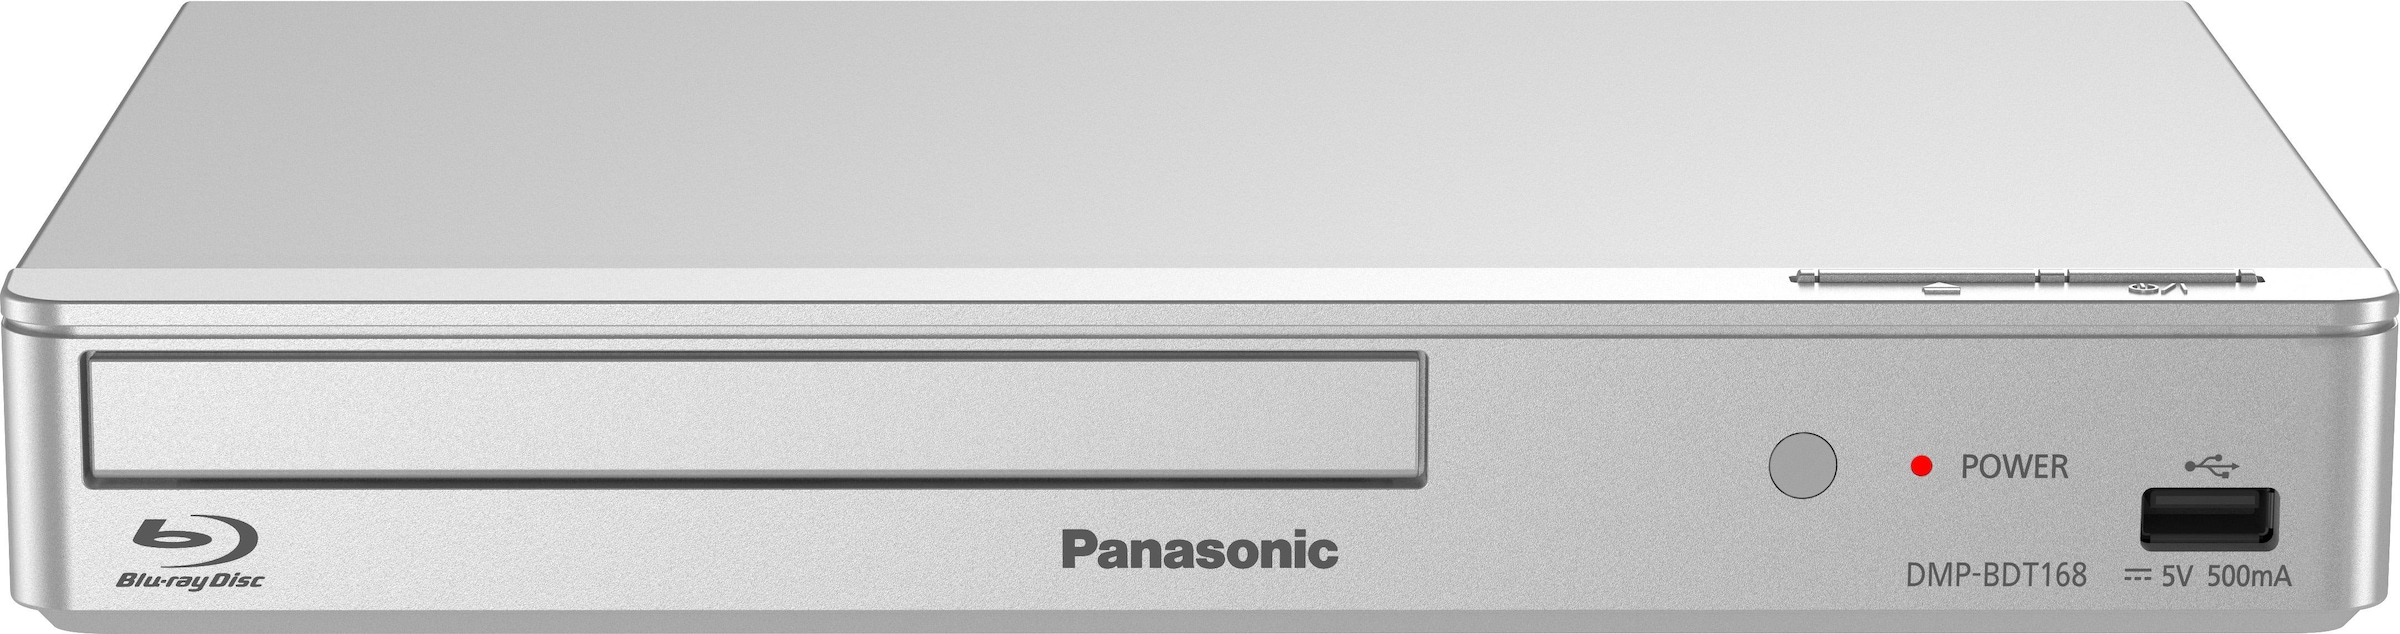 Panasonic Blu-ray-Player »DMP-BDT168«, Full Effect ➥ Jahre 3 LAN Controller UNIVERSAL HD, Schnellstart-Modus-3D (Ethernet), | Garantie XXL